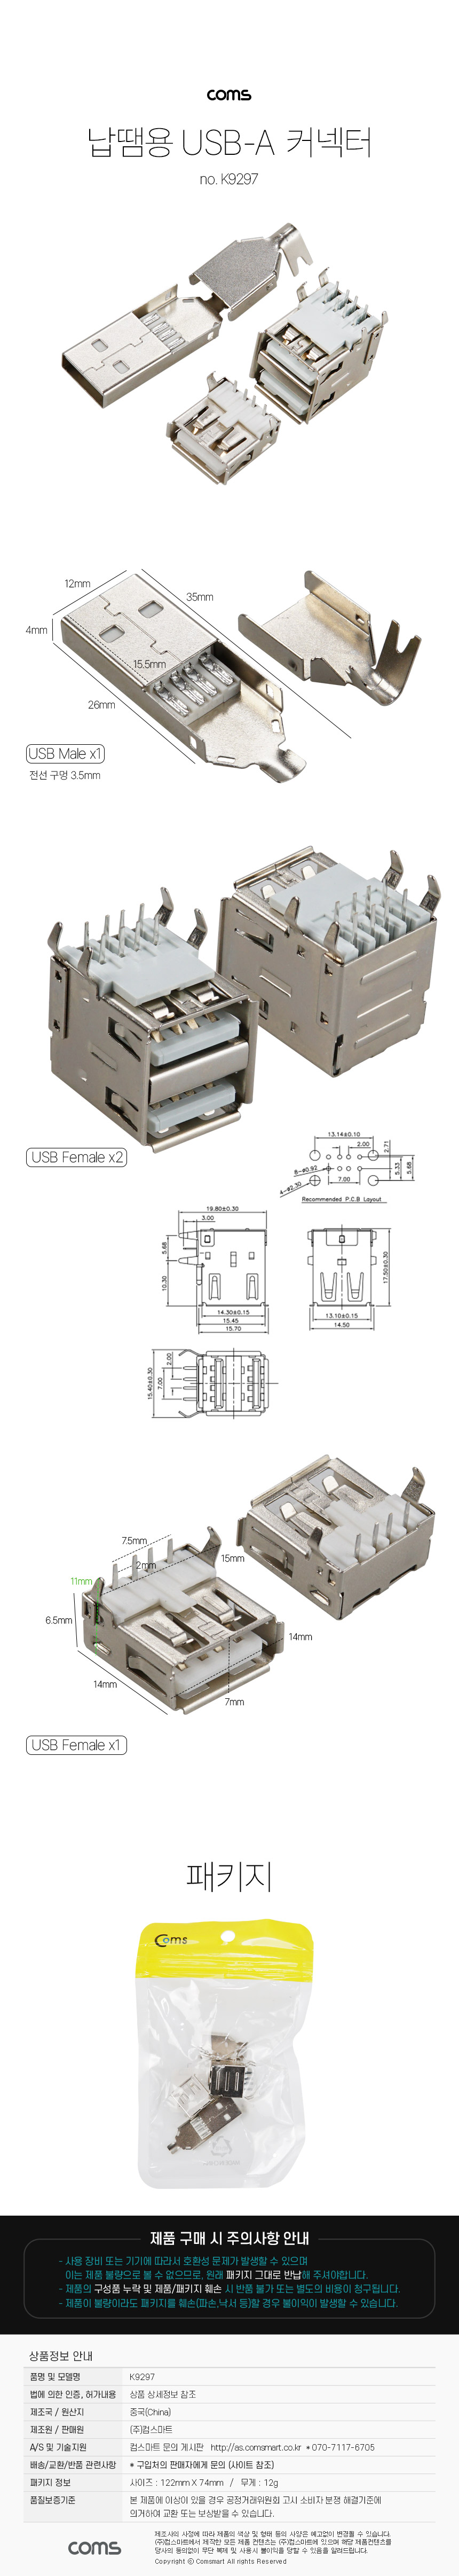 납땜용 USB A 2.0 커넥터 DIY 제작용